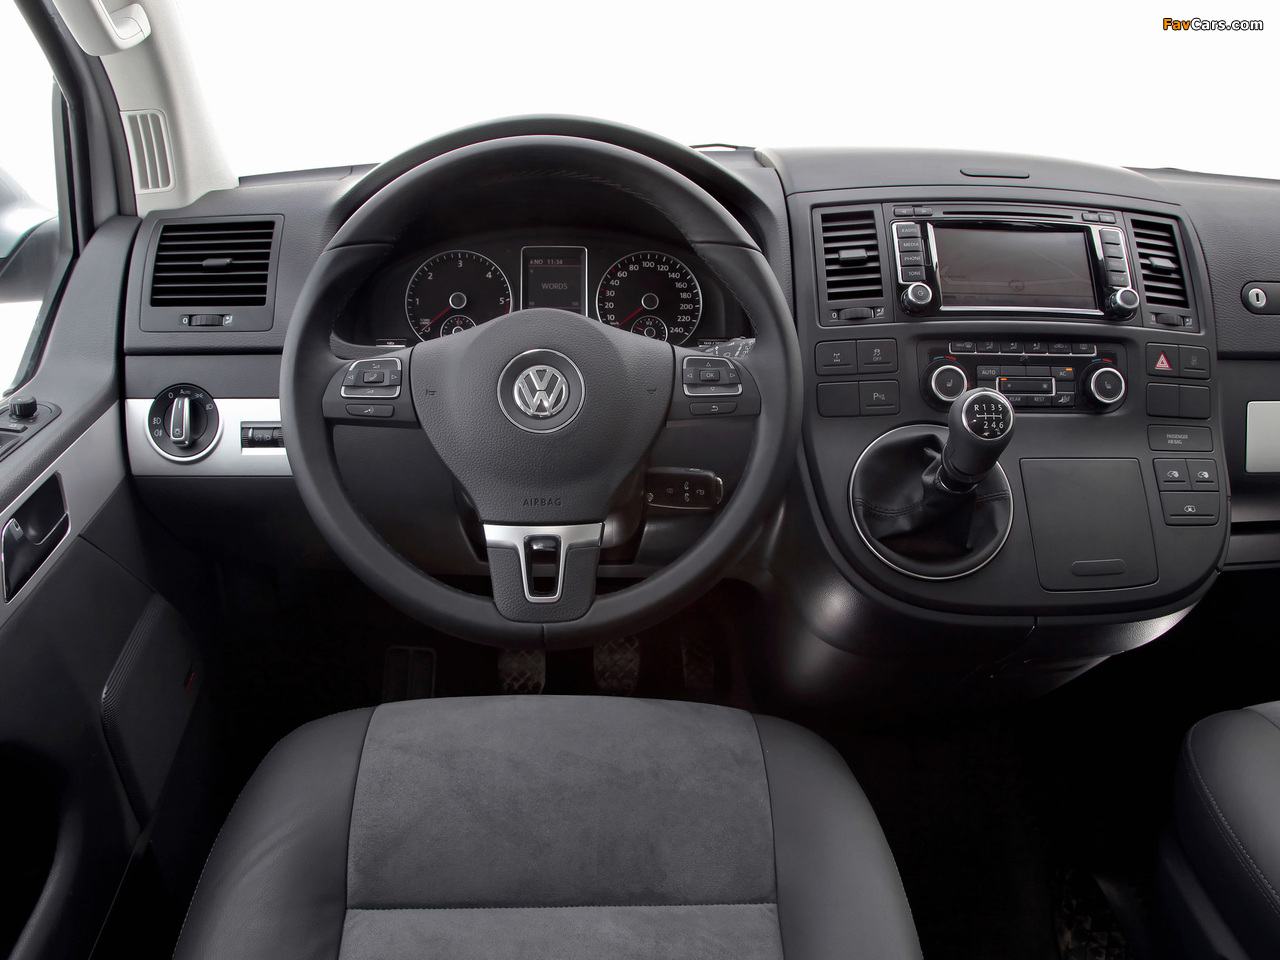 Volkswagen T5 Multivan Comfortline 2009 photos (1280 x 960)